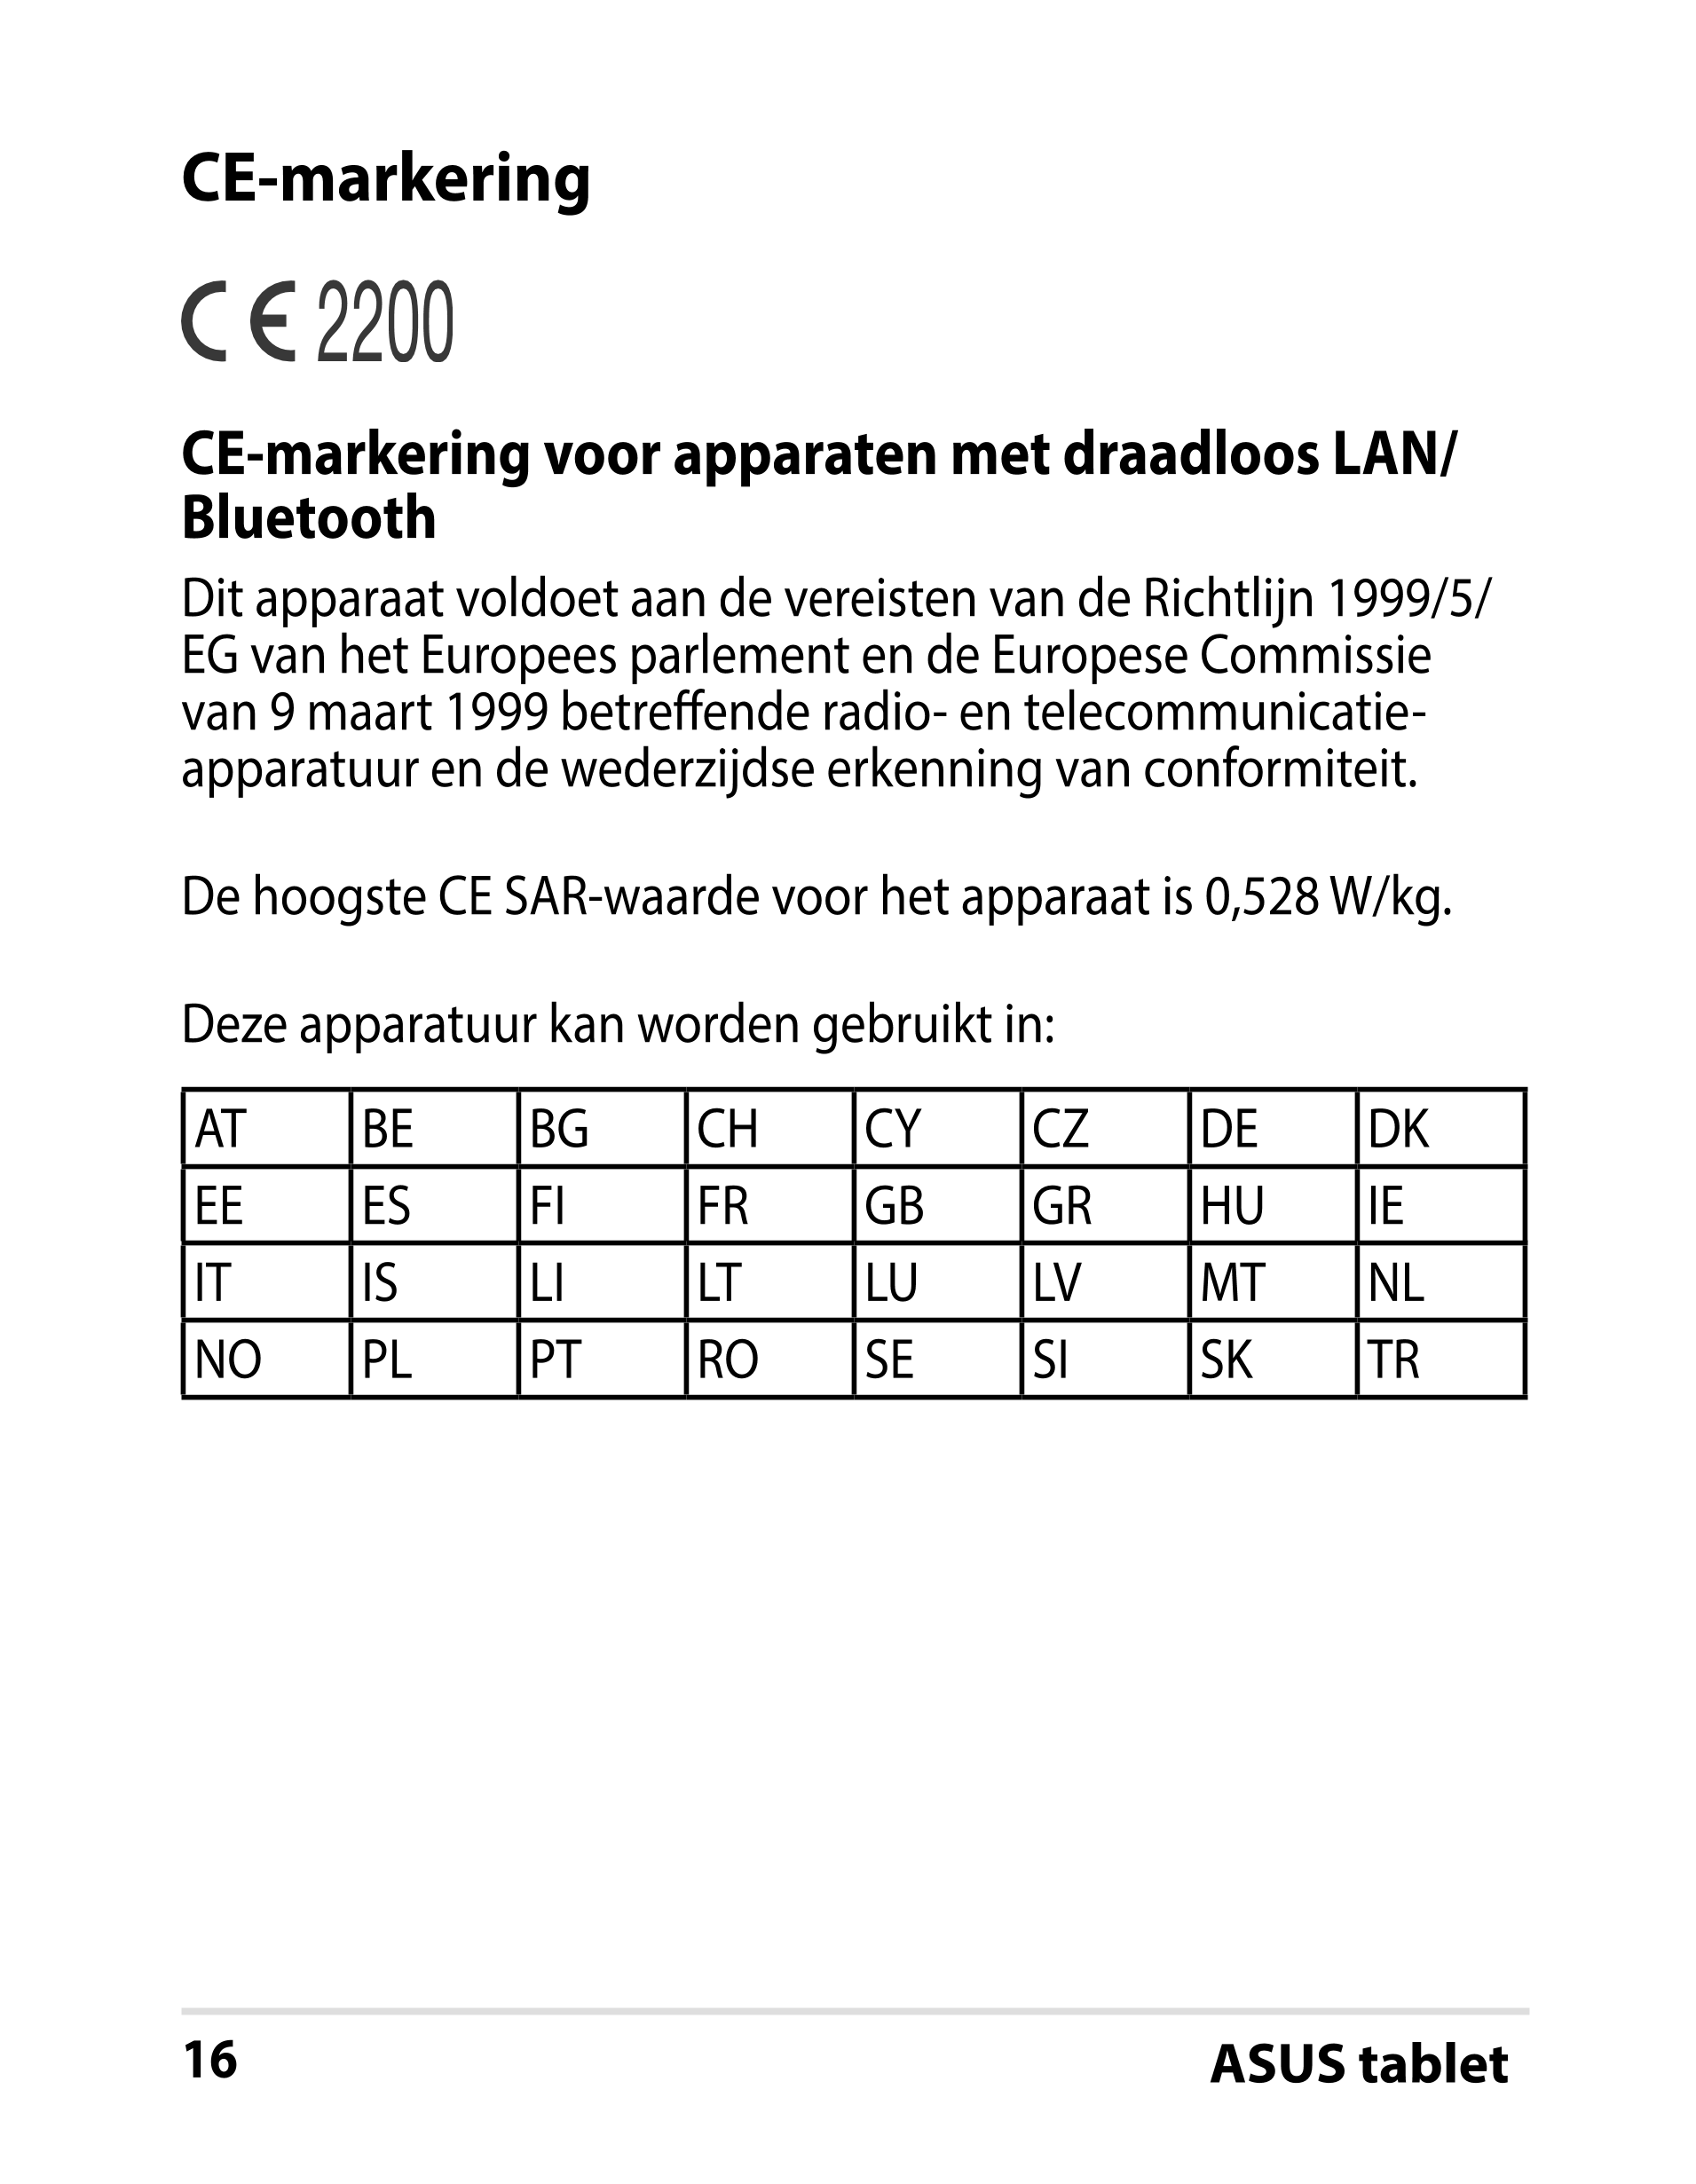 CE-markering
CE-markering voor apparaten met draadloos LAN/
Bluetooth
Dit apparaat voldoet aan de vereisten van de Richtlijn 199